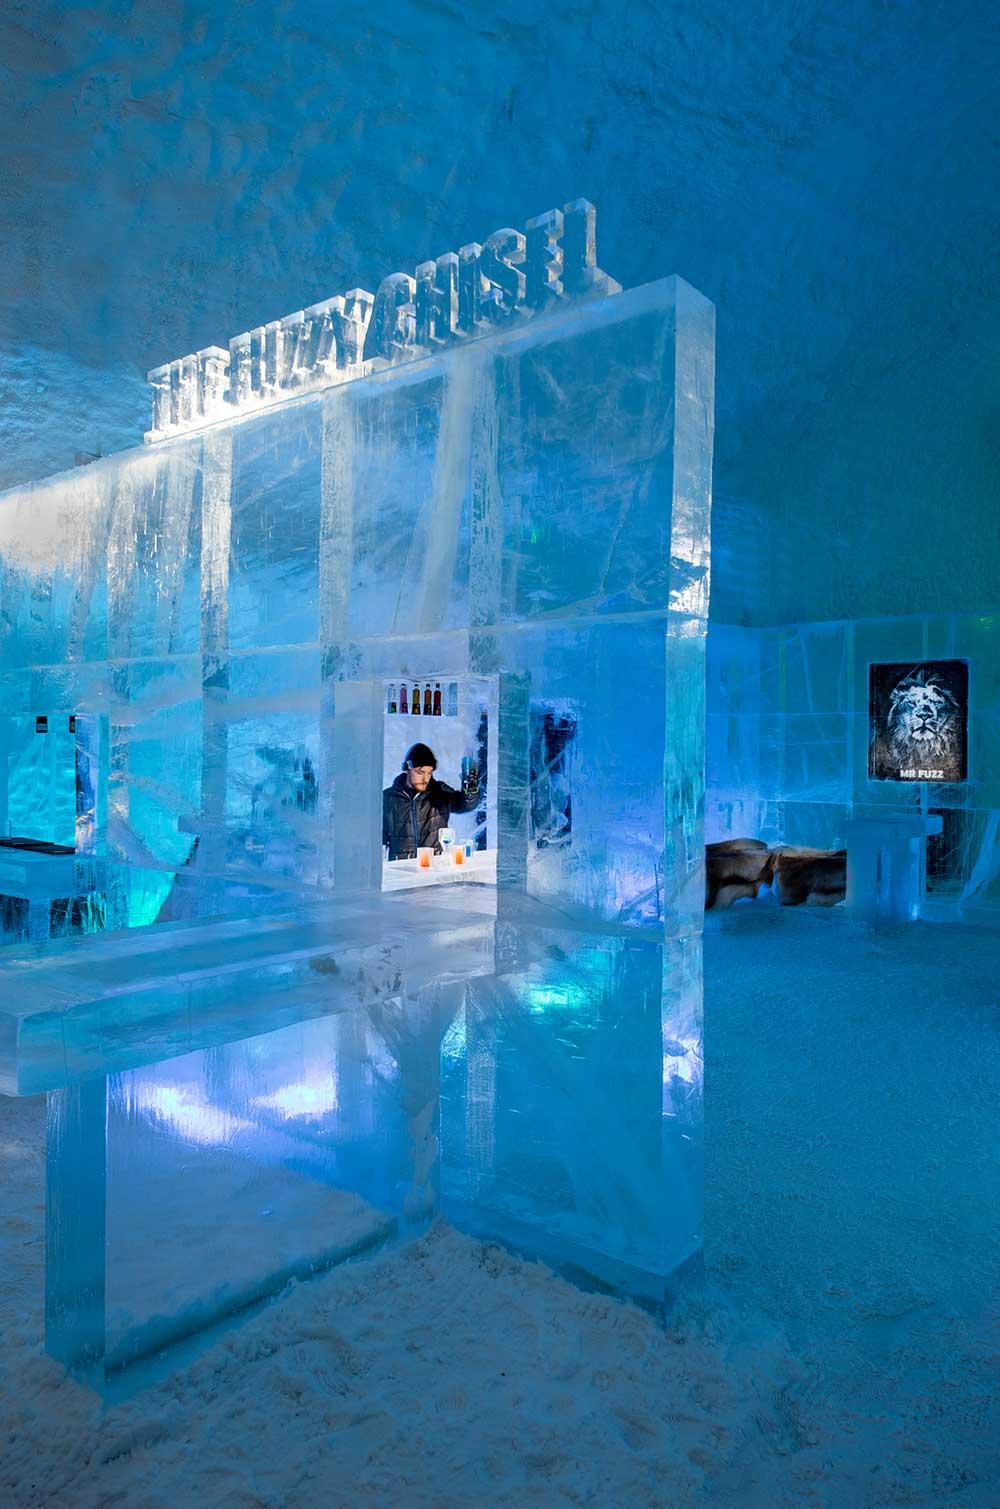 Isbaren på Icehotel i Jukkasjärvi. ”The Fuzzy Chisel” är skapad av Jens Thoms Ivarsson, Karl-Johan Ekeroth, Elin Julin och Håkan Jutblad.